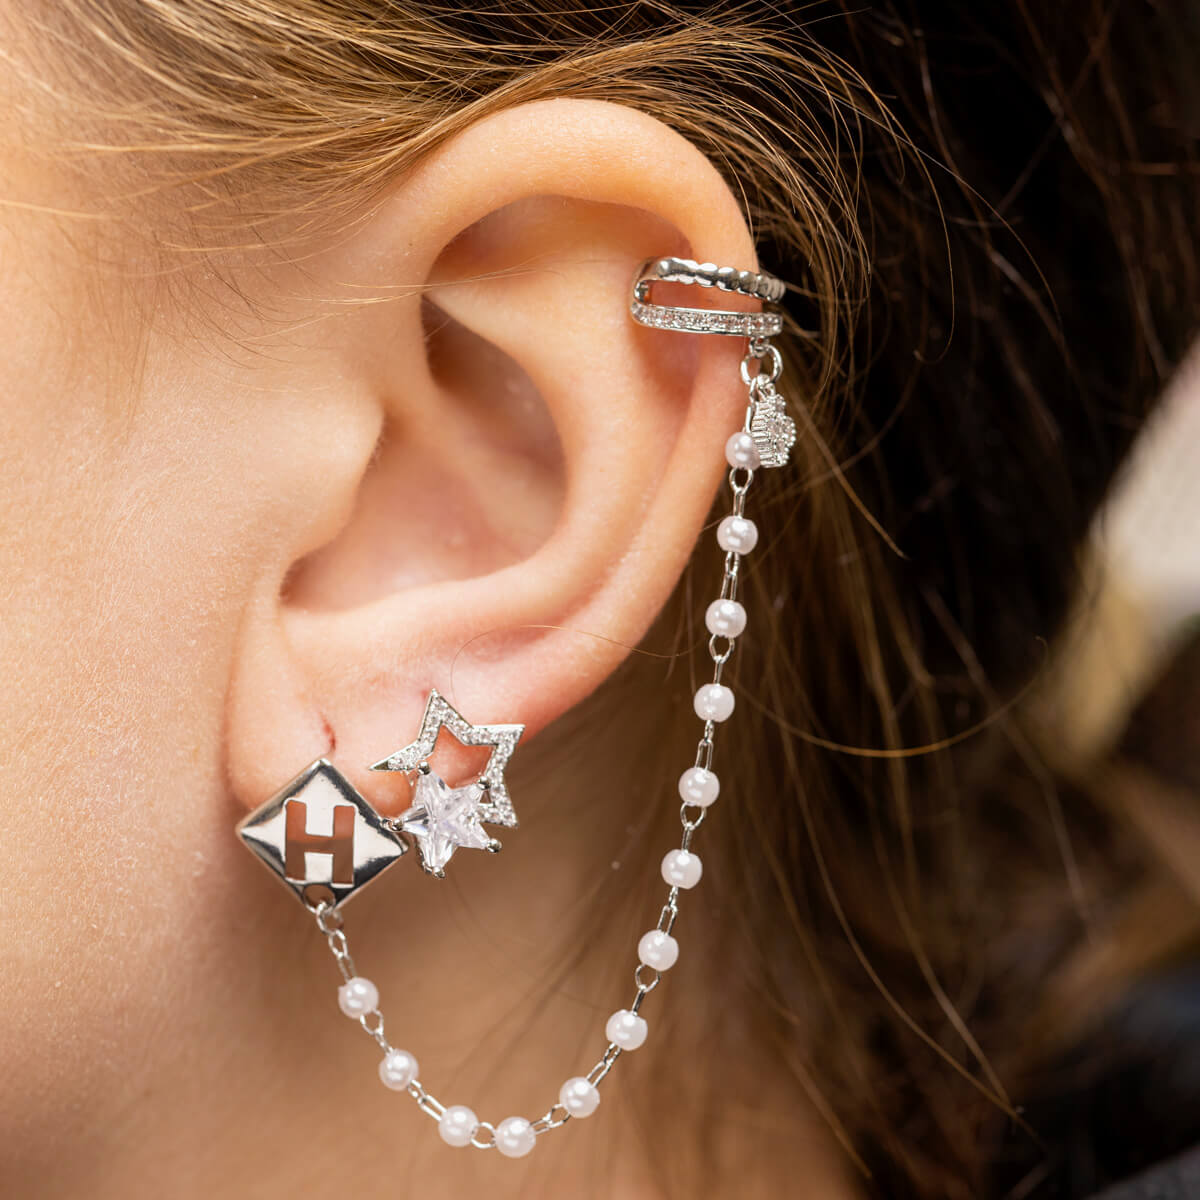 Zirconia Star Pineetju Rusty Jewelry Ear Cuff 1pcs